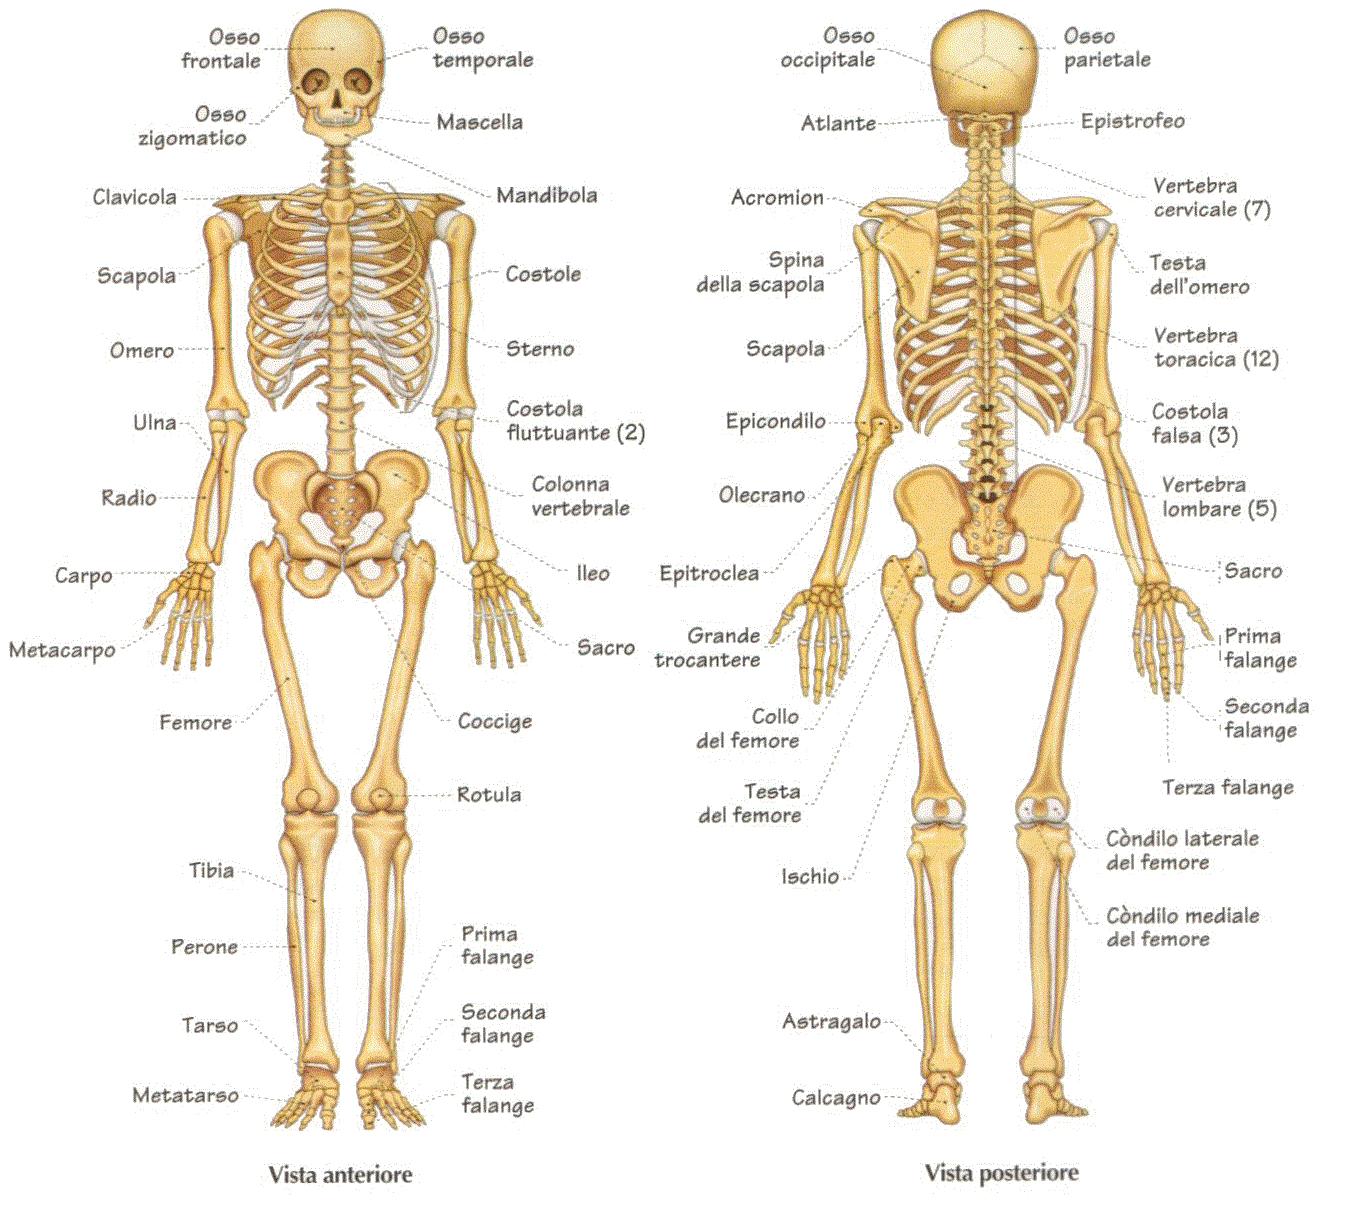 ¿Cuántos huesos hay en total?